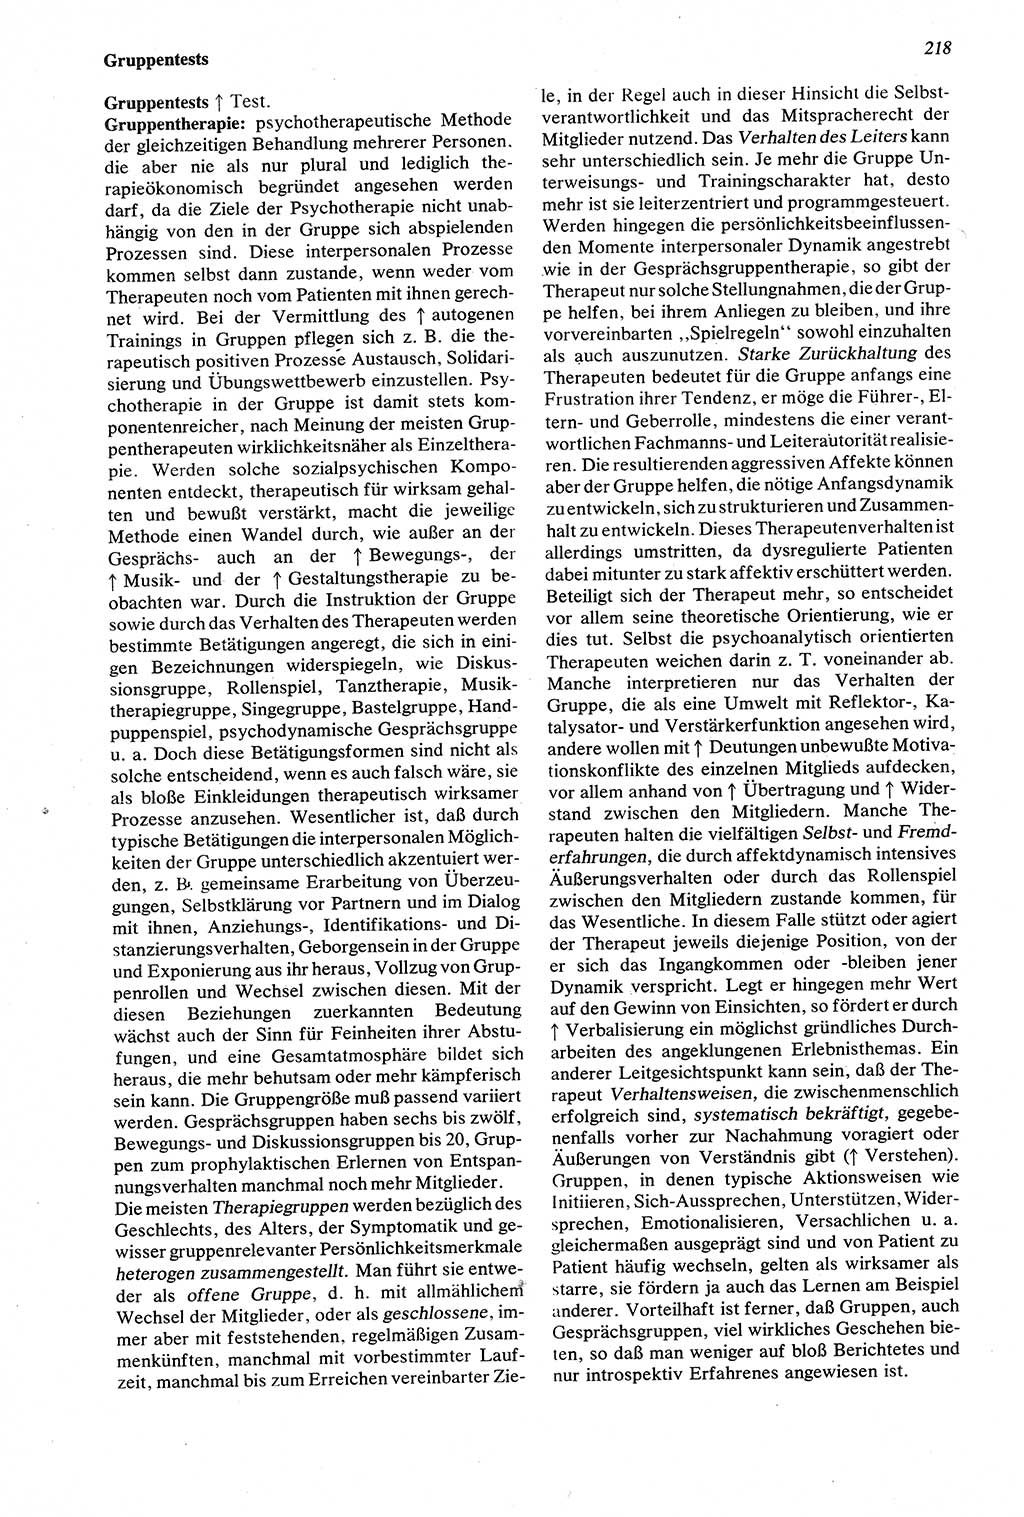 Wörterbuch der Psychologie [Deutsche Demokratische Republik (DDR)] 1976, Seite 218 (Wb. Psych. DDR 1976, S. 218)